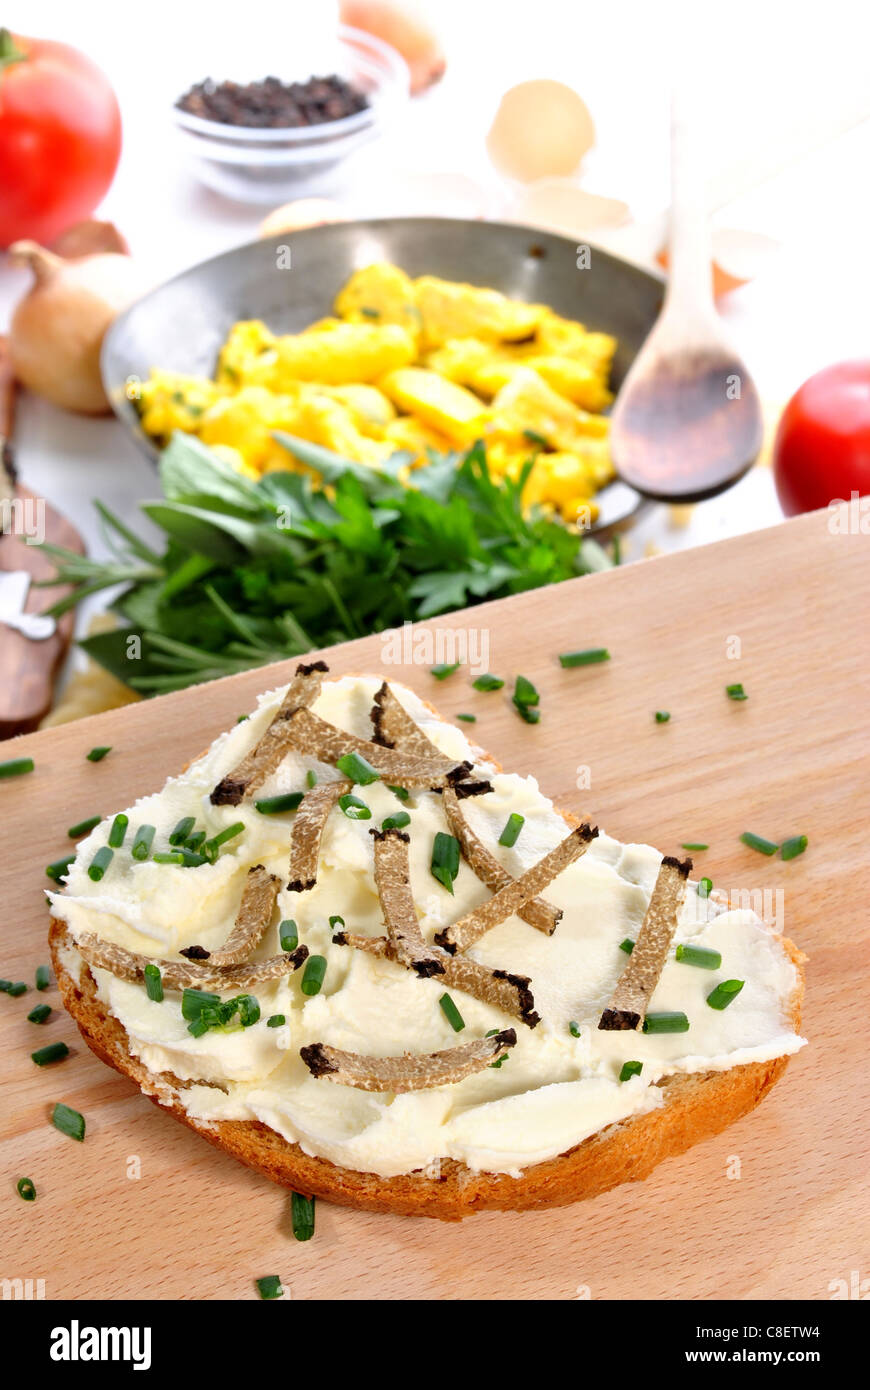 Formaggio a pasta morbida sul pane grattugiato con tartufo estivo Foto Stock